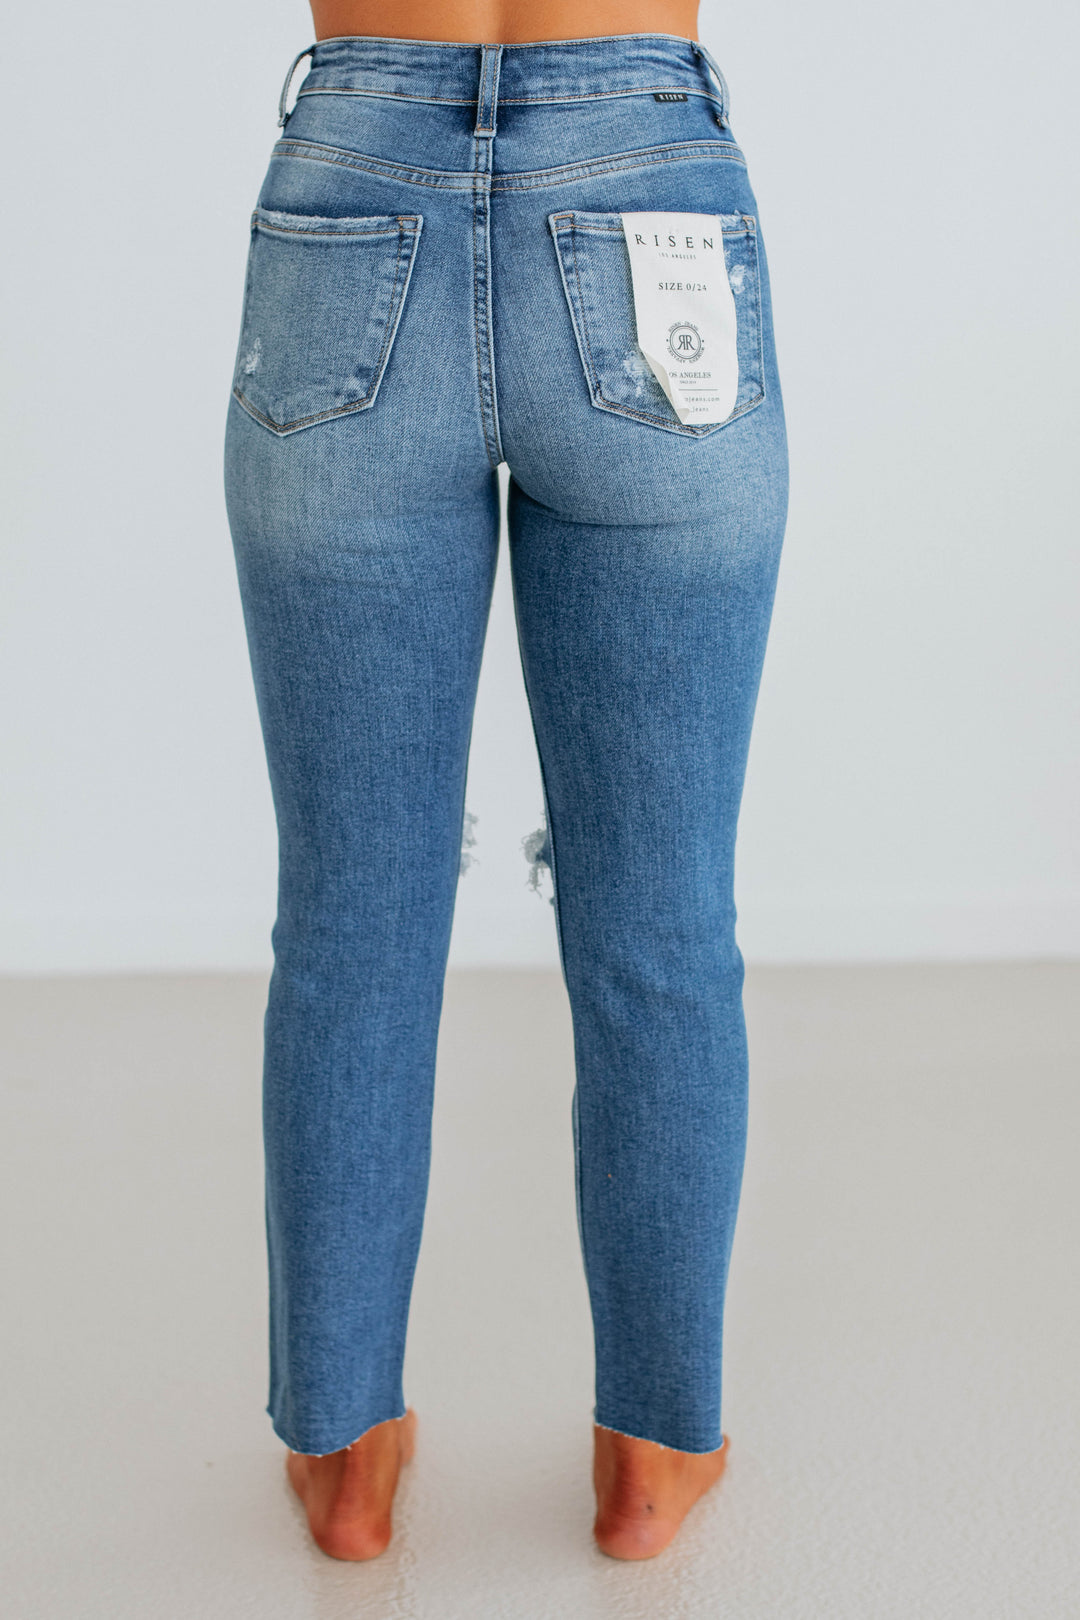 Sophie Risen Jeans